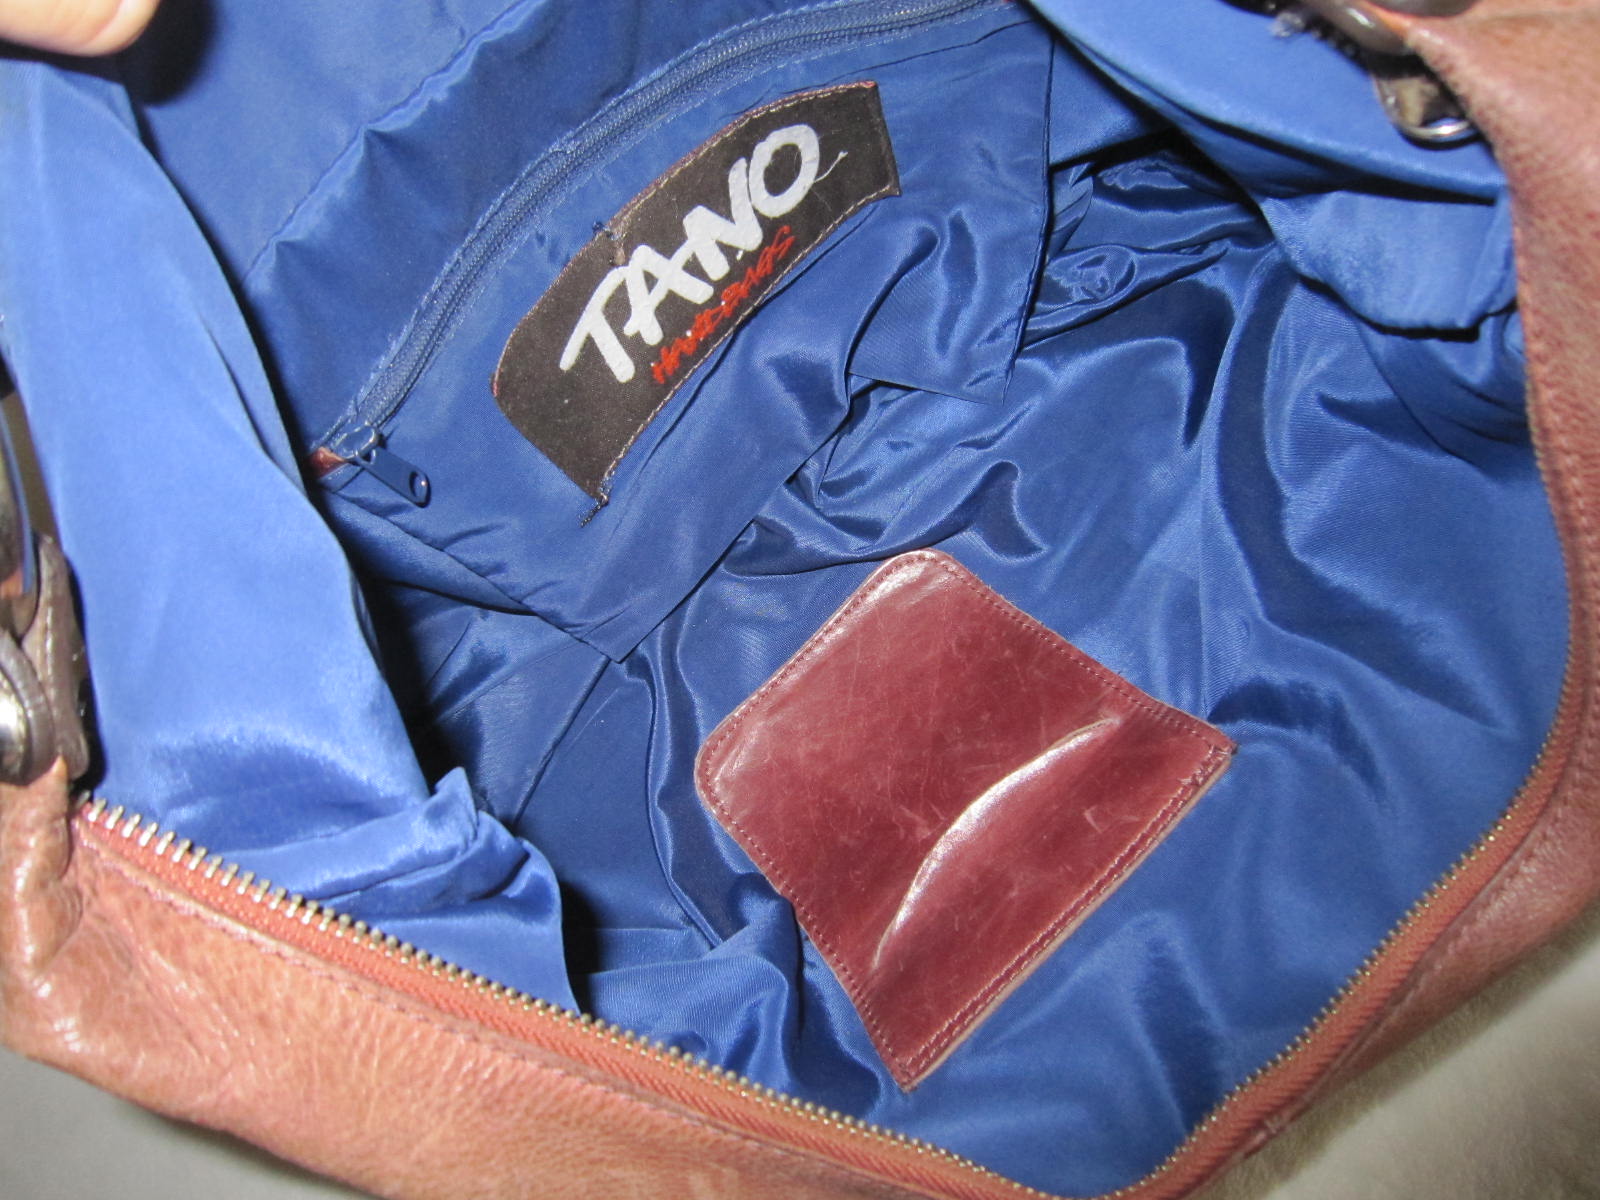 TANO bag | Tano bags, Bags, Gorgeous bags